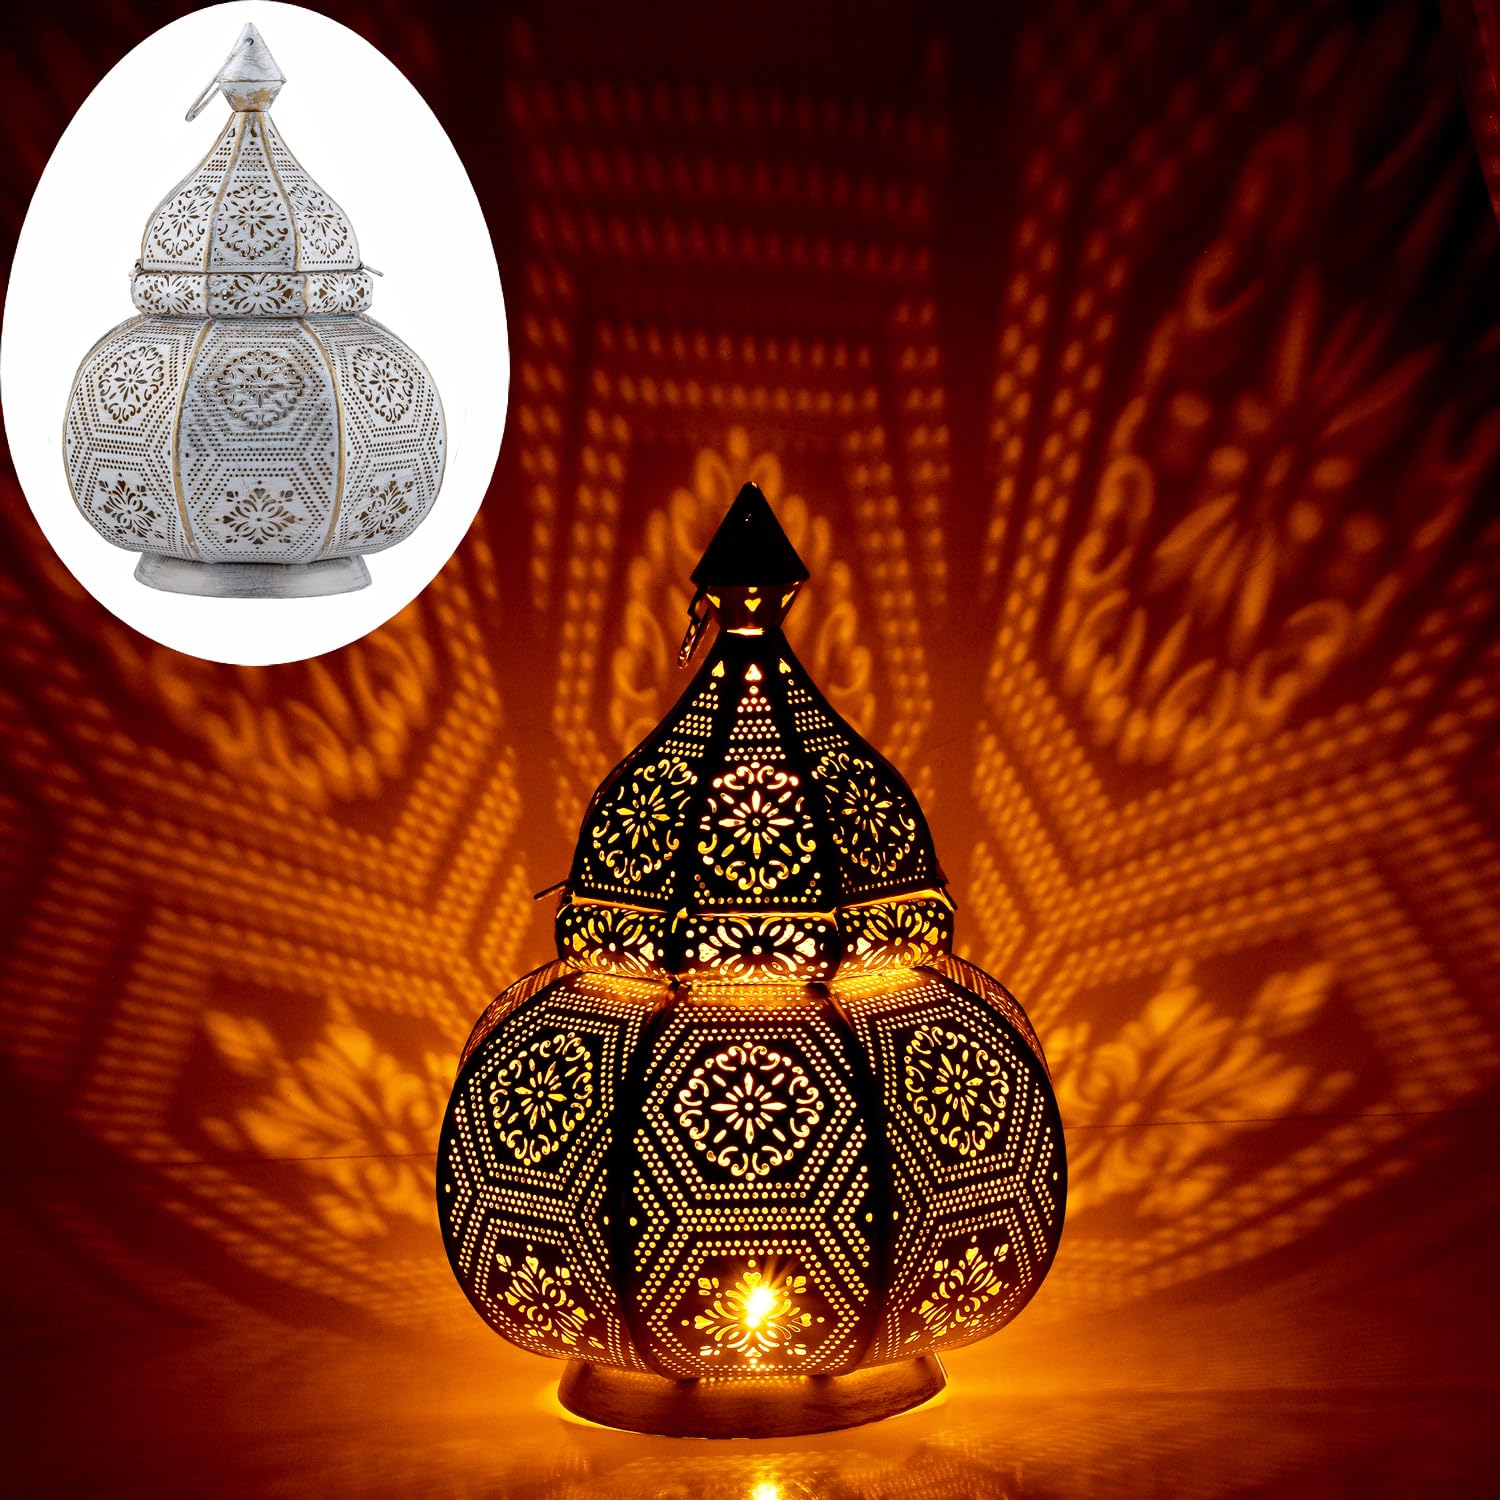 Marrakesch Lampe und Laterne in einem aus Metall 30 cm groß | Tischlampe Windlicht Mahana Weiss als Orientalische Dekoration